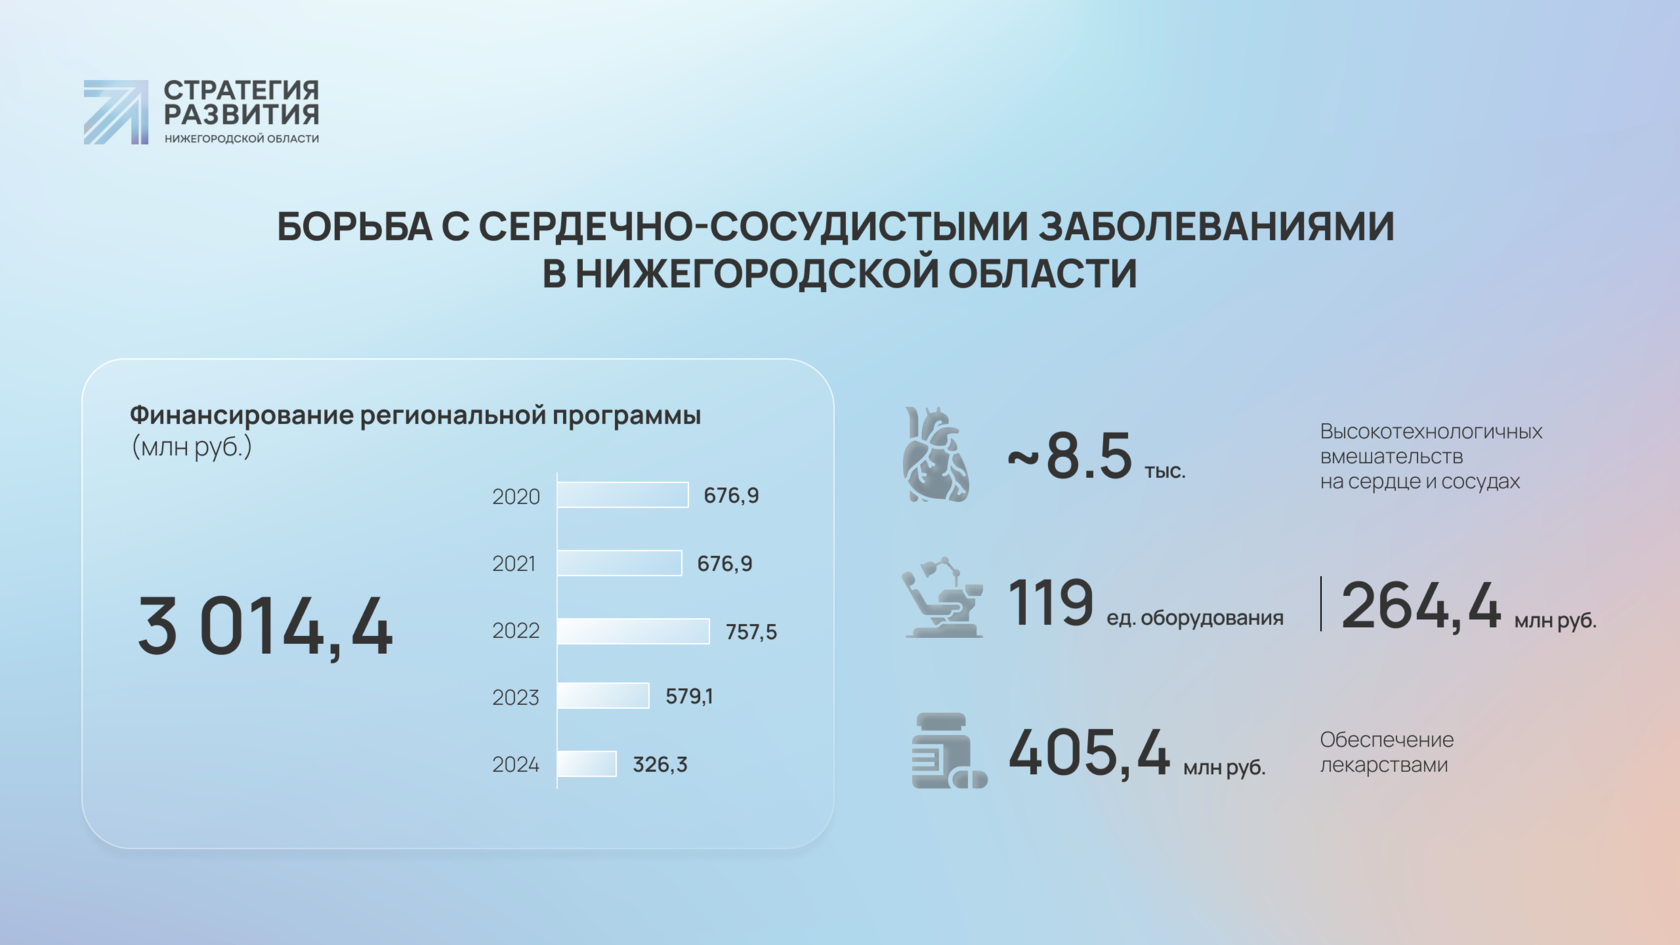 Как в Нижегородской области борются с болезнями системы кровообращения